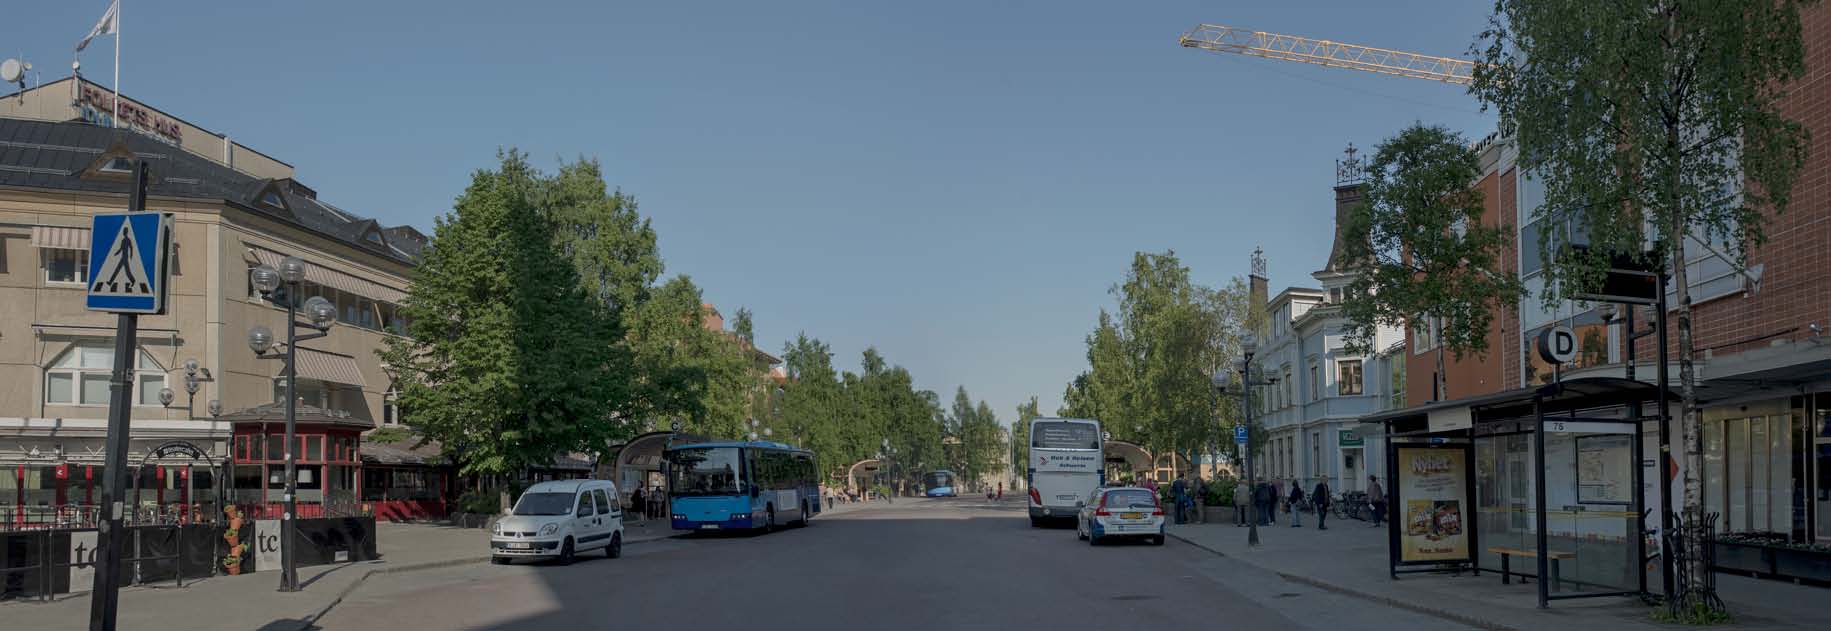 tretton samverkansprojekt Vasaplan ligger mitt i Umeå och är stadens centrala bussterminal. Inom de närmaste åren kommer platsen att byggas om.